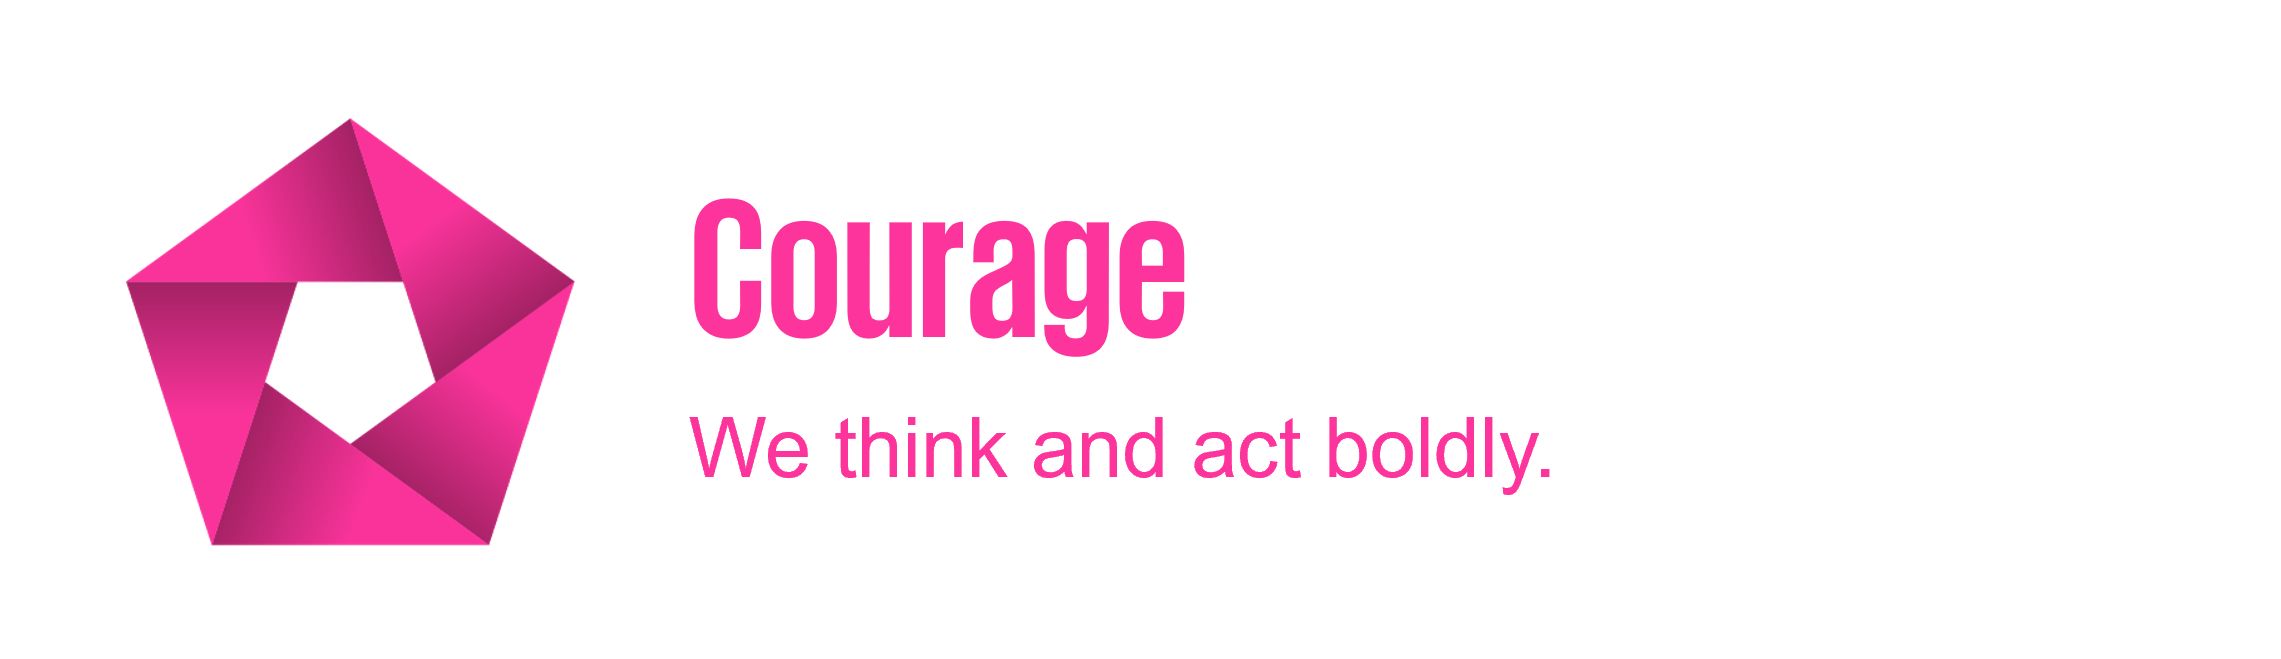 Courage: 我們大膽思考，勇於採取行動